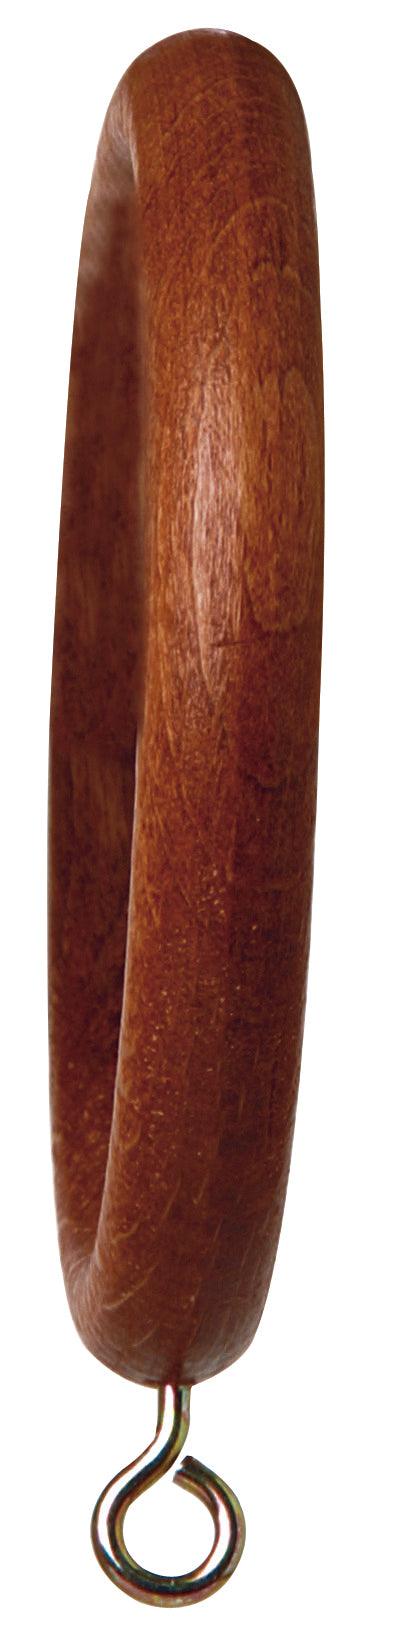 Ring Wood w/eye H 1-3/16" - Alan Richard Textiles, LTD Zabala 1-3/16" 2000 Wood & Maderas Wood